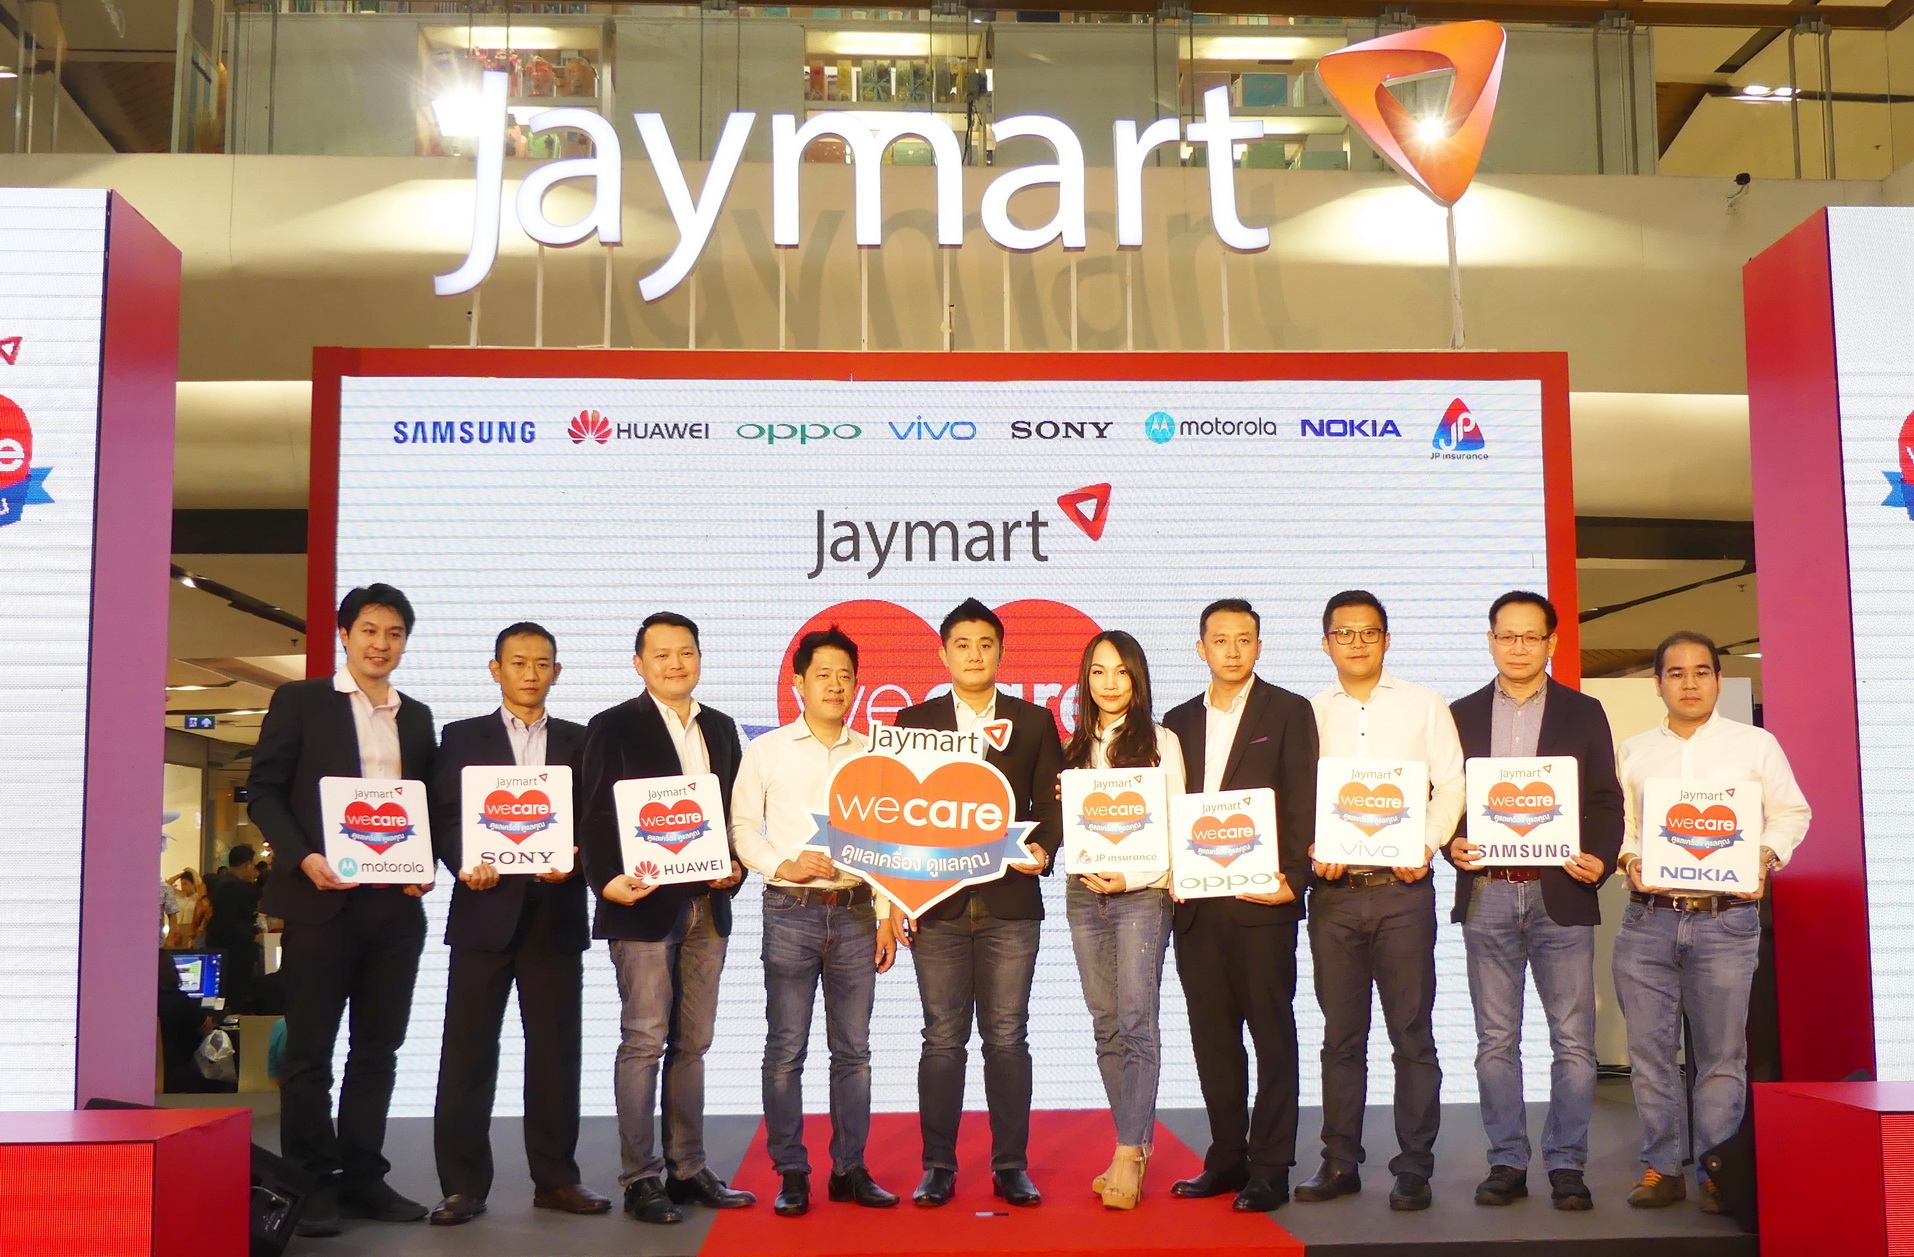 Jaymart เปิดแพ็คเกจ “ประกันมือถือ” ครั้งแรกของไทย คุ้มครองอุบัติเหตุทั้งตัวเครื่องทั้งเจ้าของเครื่อง